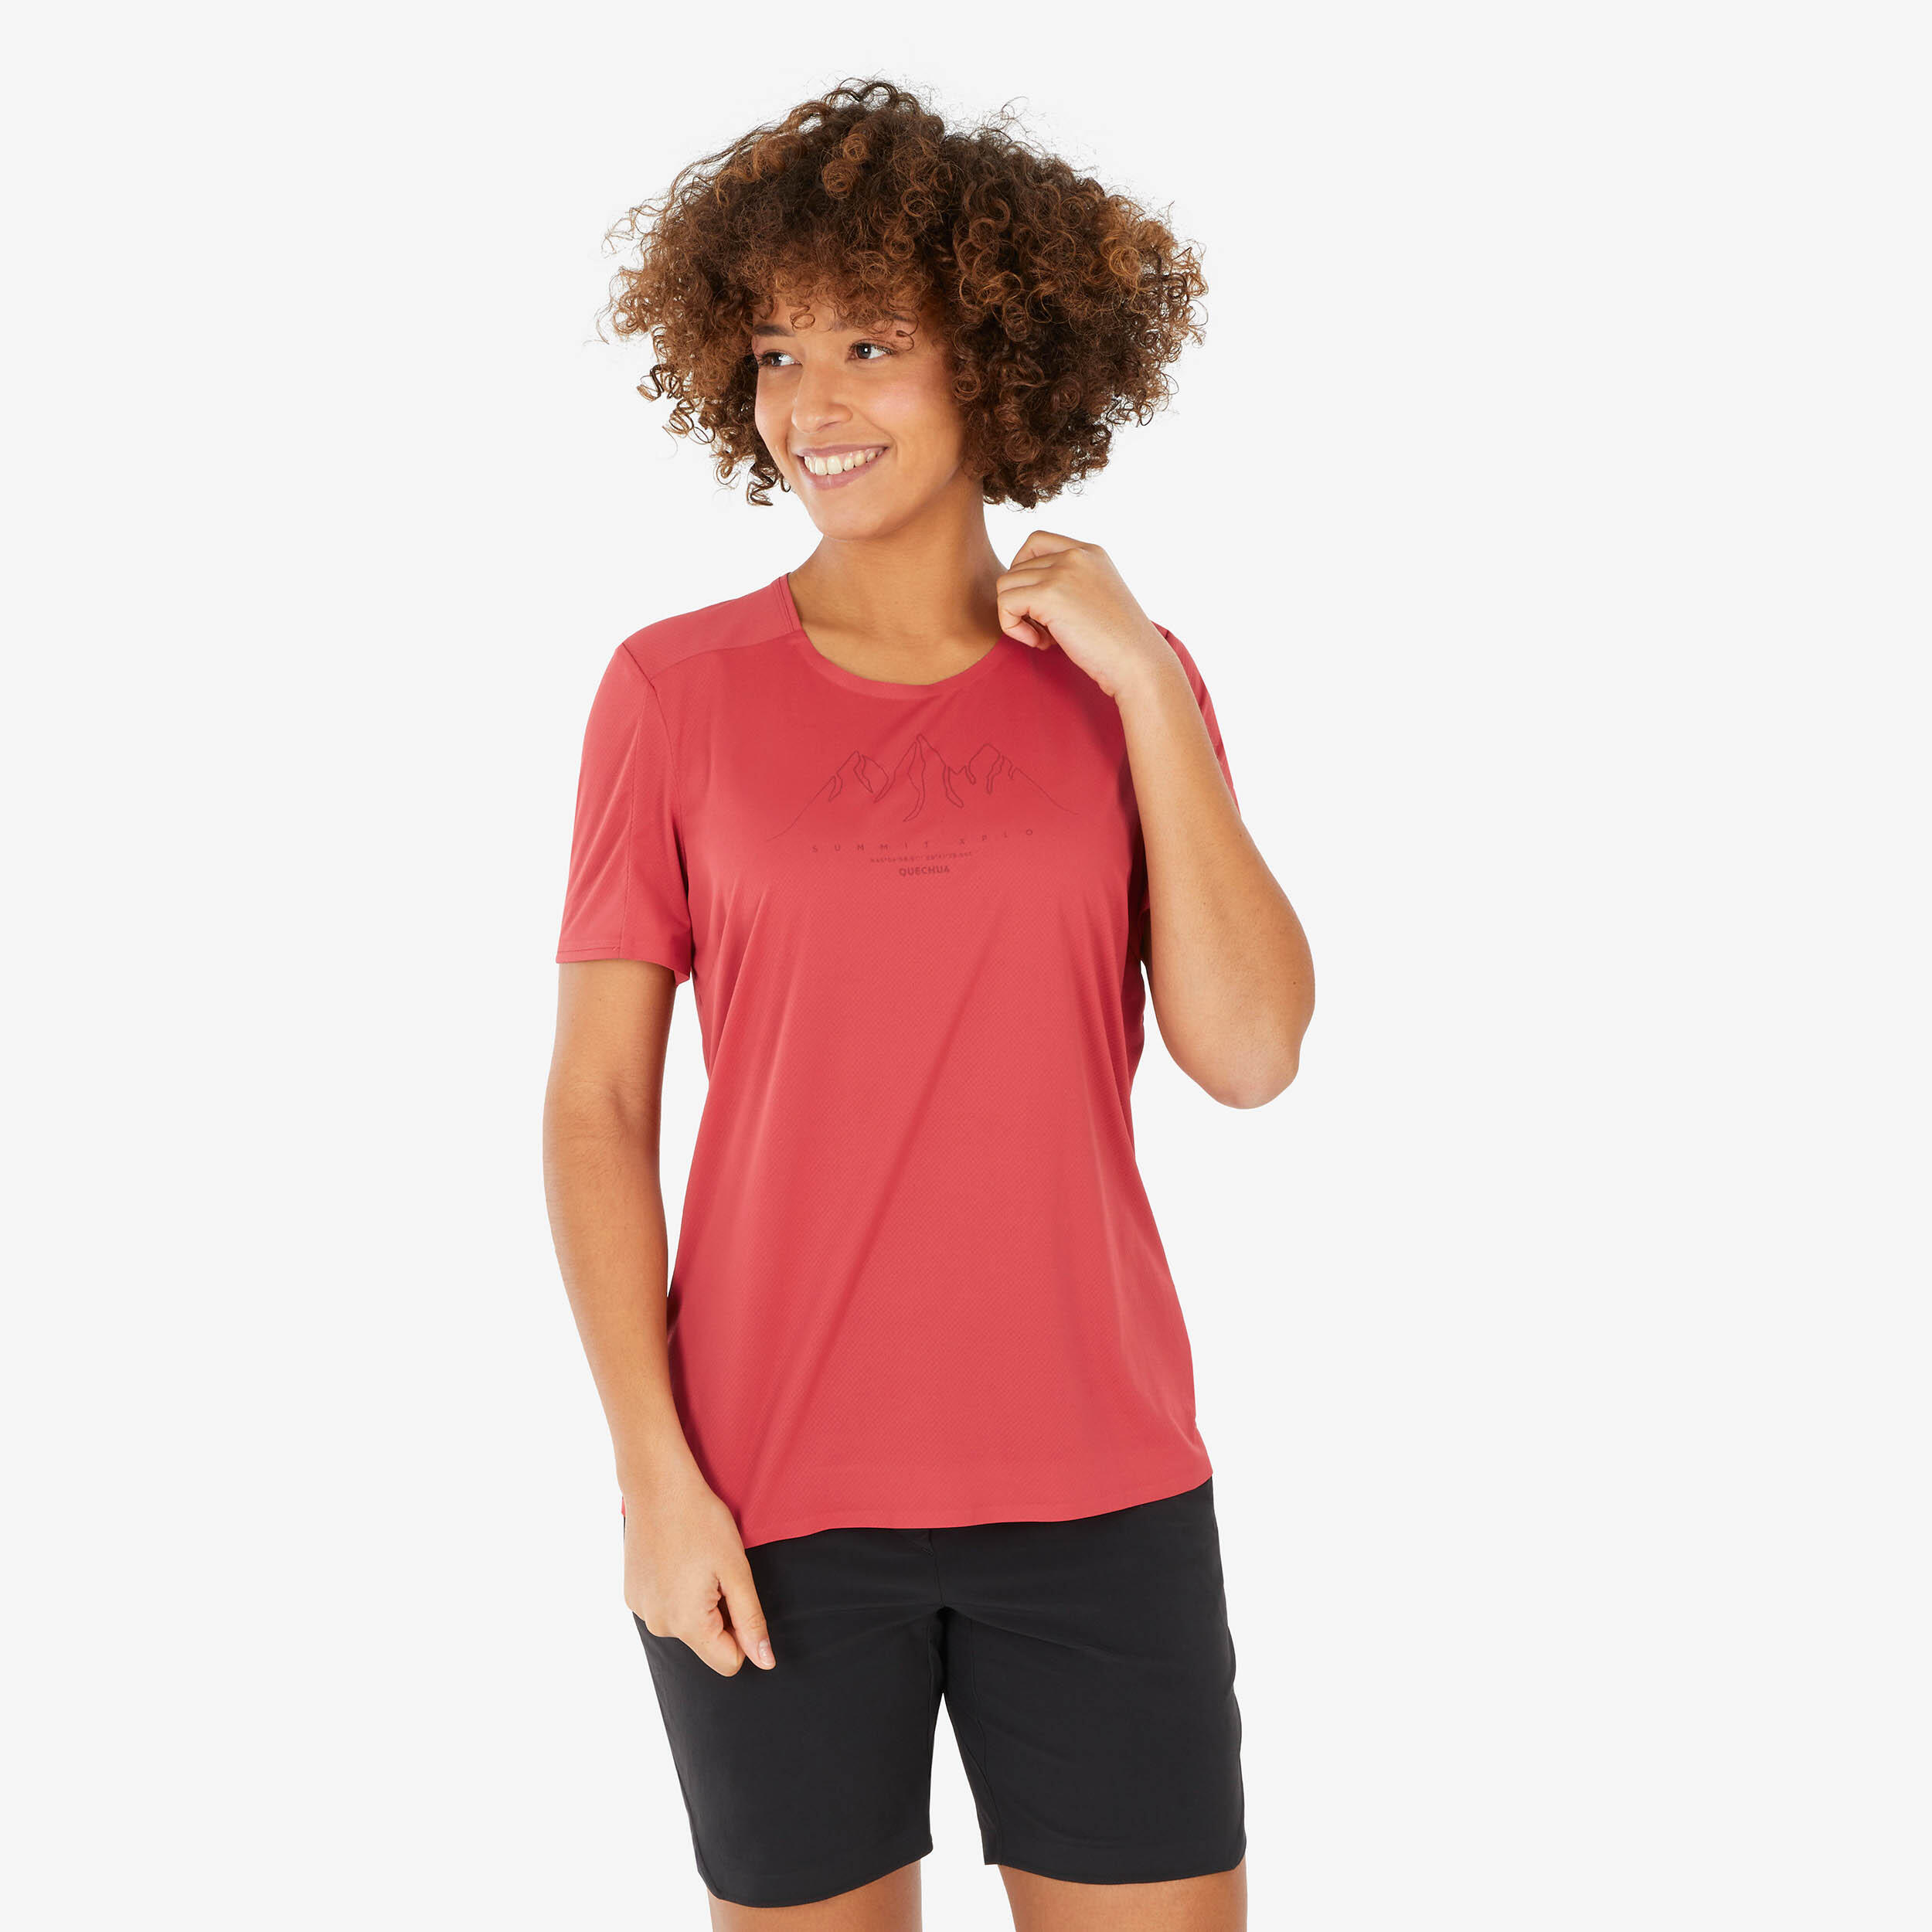 QUECHUA Women's Short-sleeved Hiking T-Shirt MH500